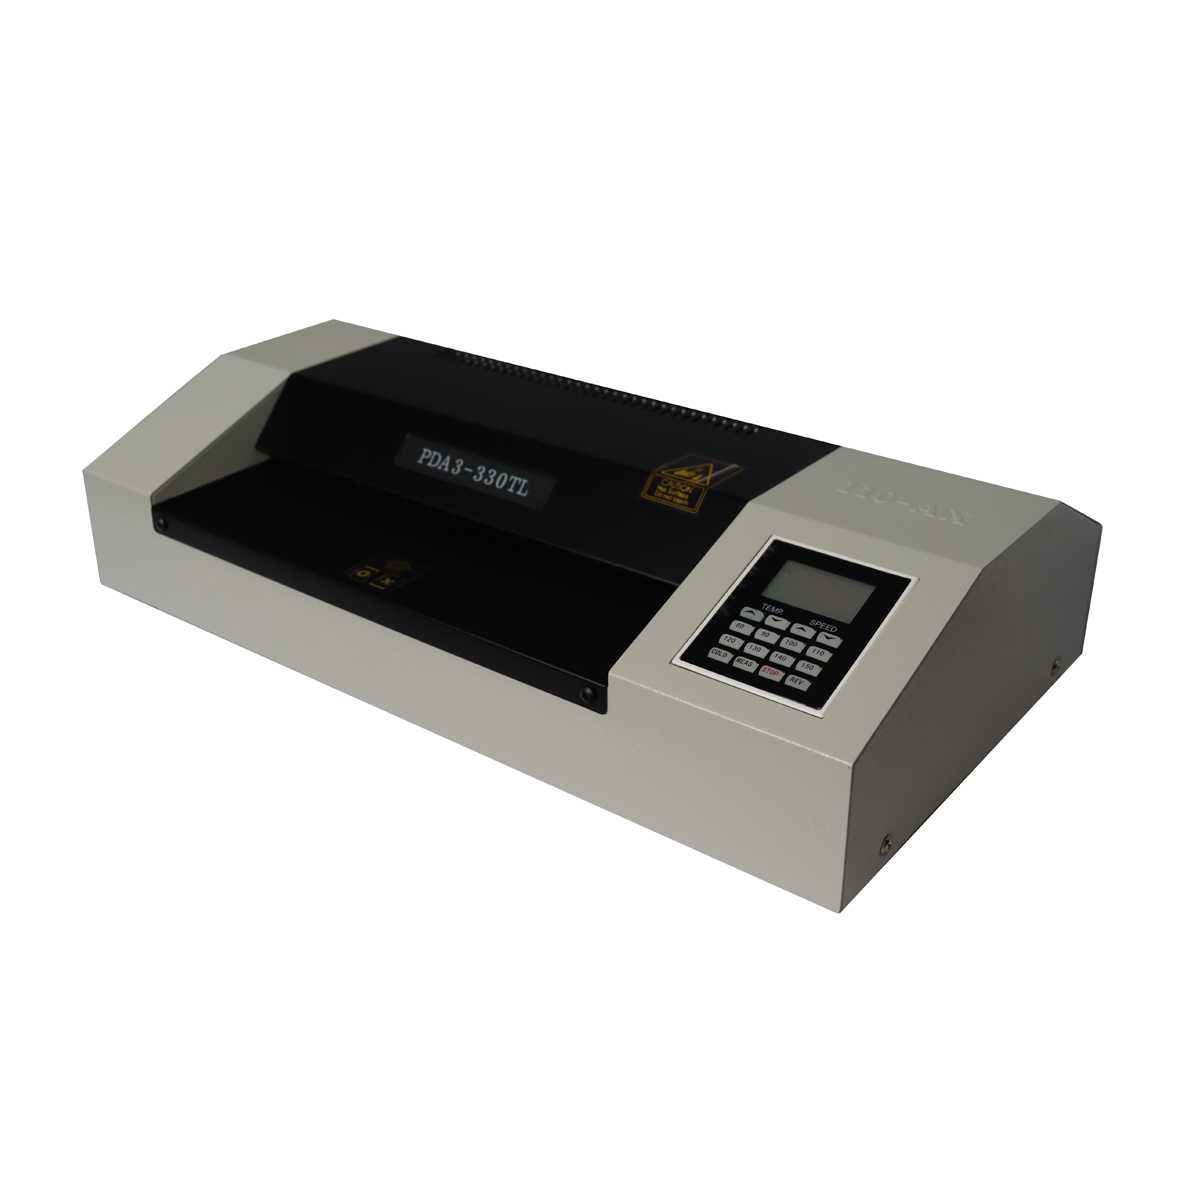 دستگاه پرس کارت یا لمینت مدل PDA3-330TL